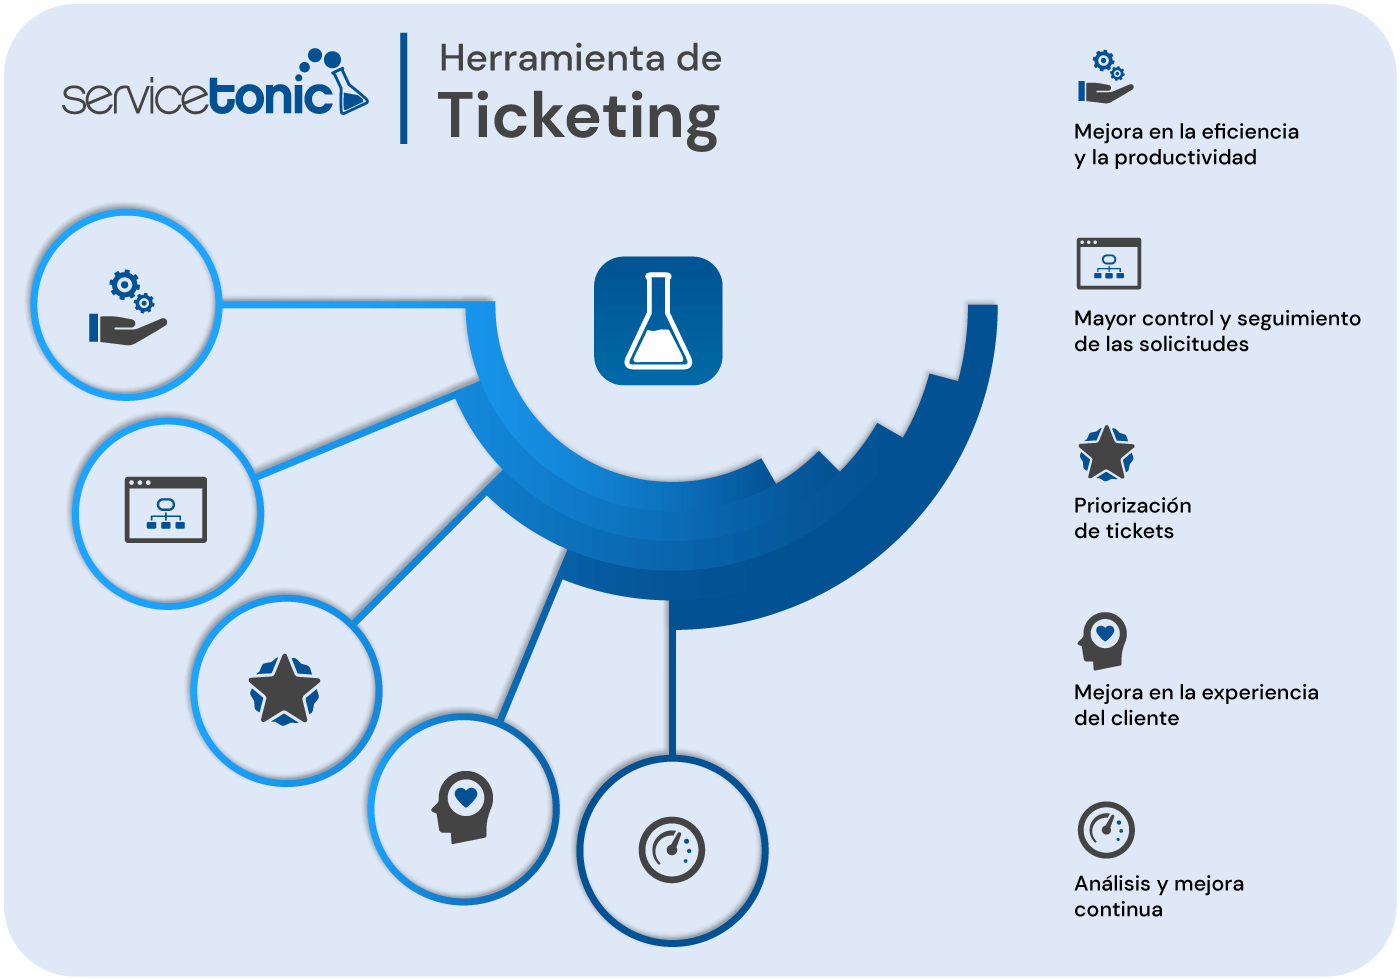 beneficios herramienta de ticketing